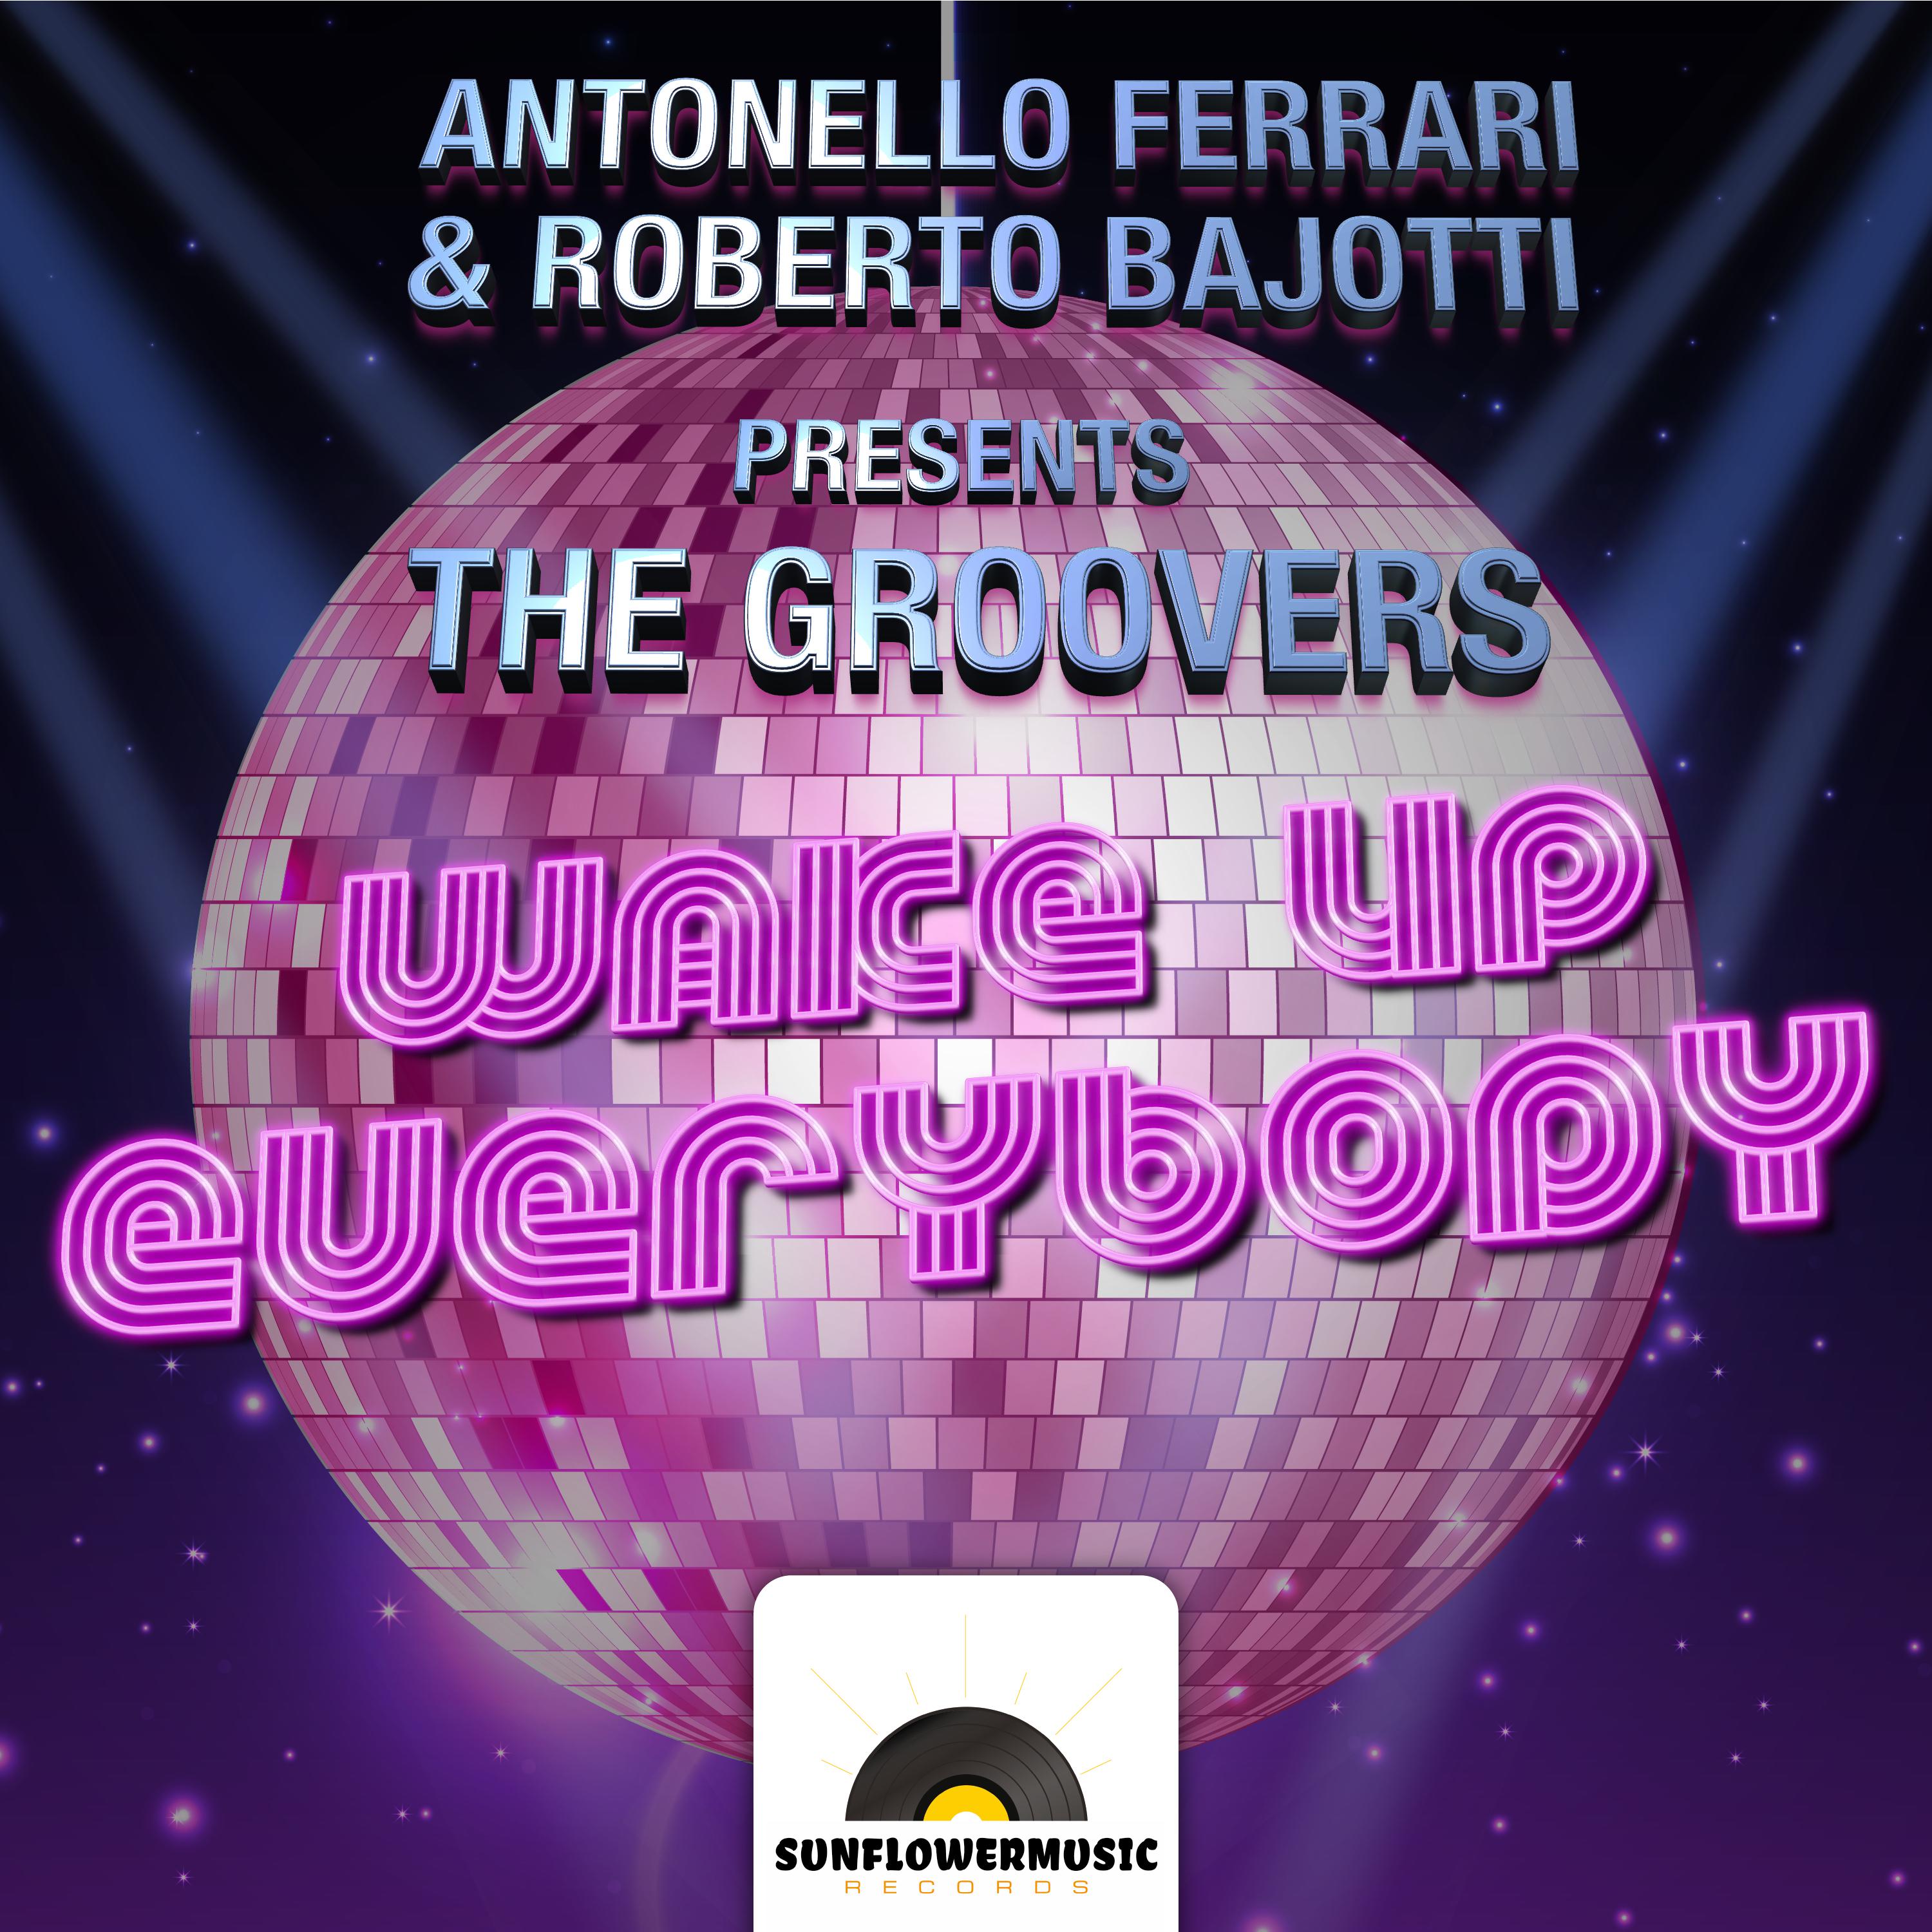 Antonello Ferrari - Wake Up Everybody (Antonello Ferrari & Roberto Bajotti Club Mix)